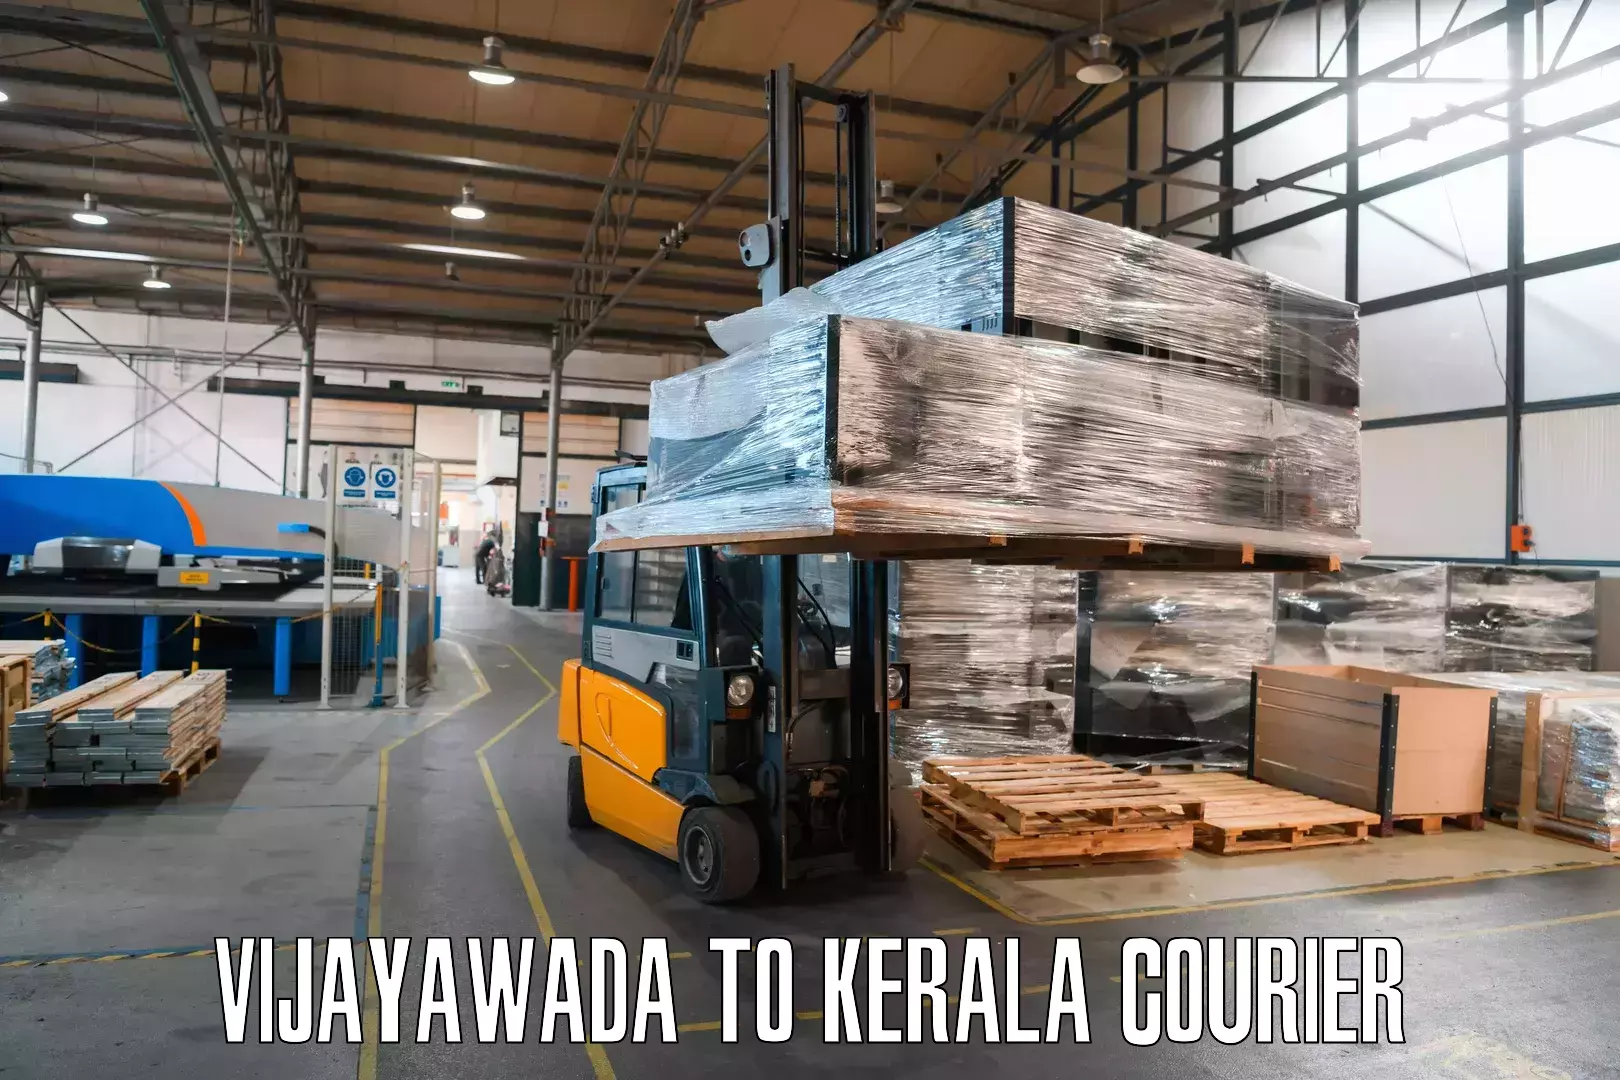 Package tracking in Vijayawada to IIIT Kottayam